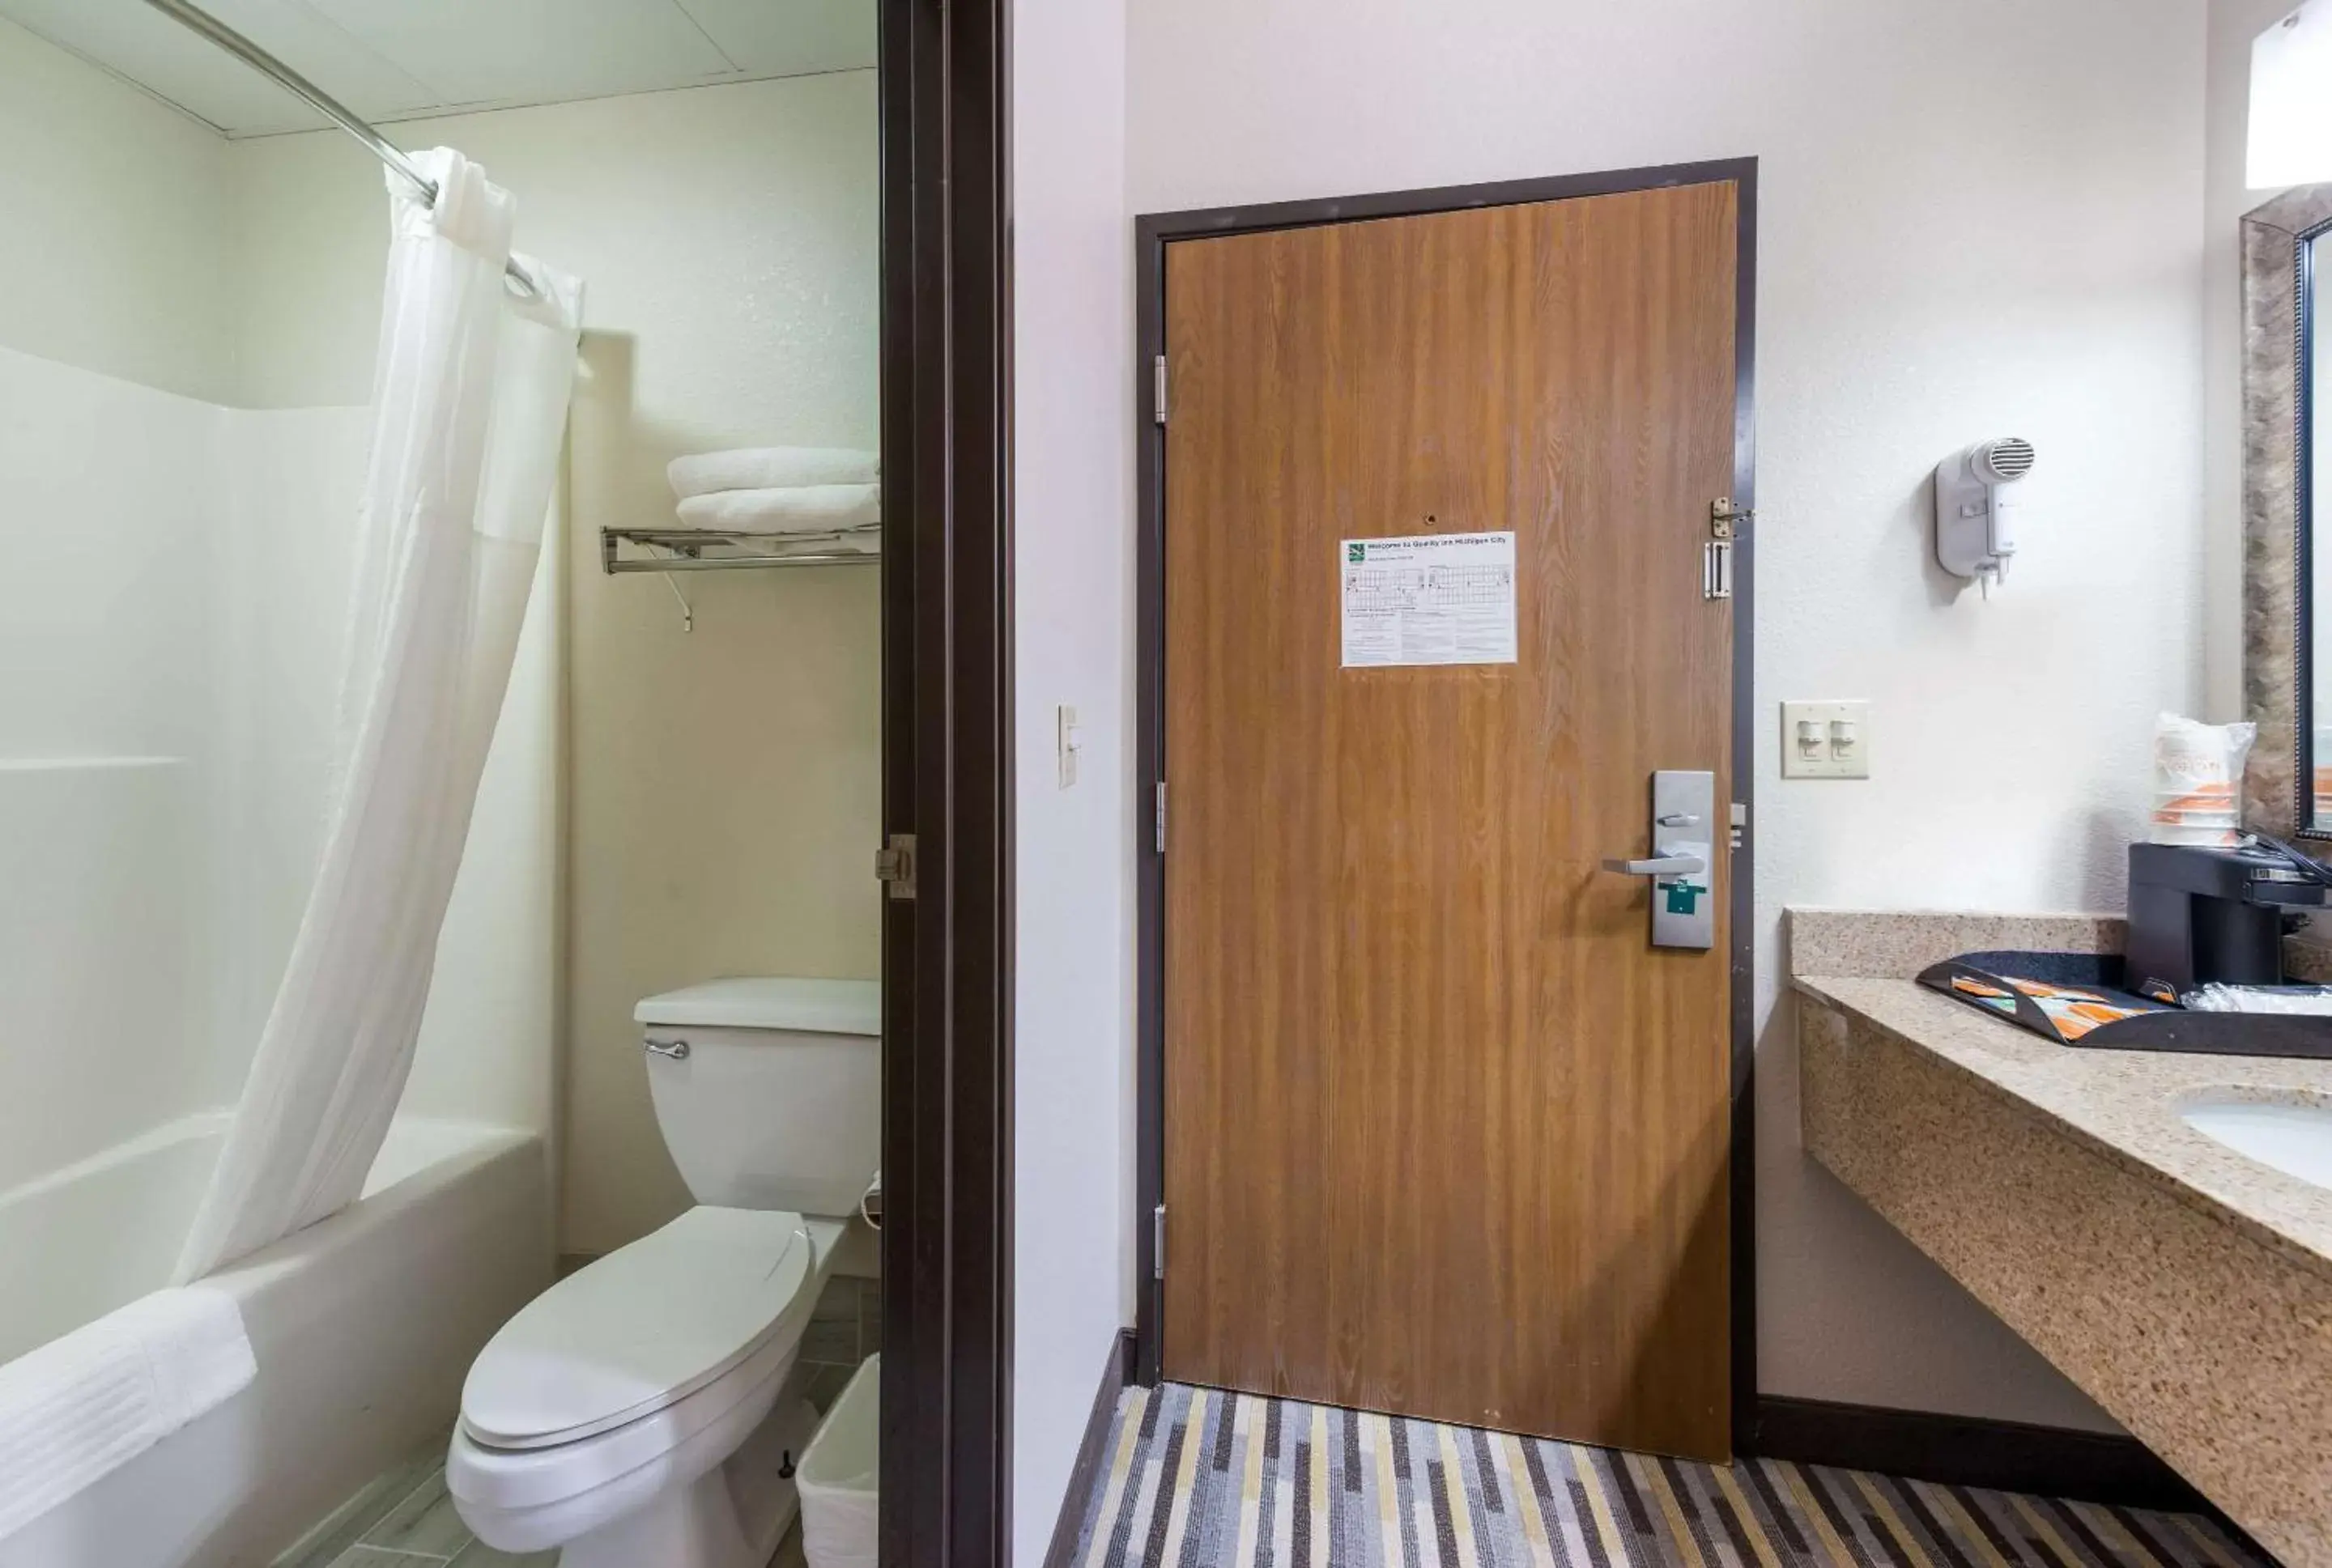 Bathroom in Quality Inn - Michigan City, IN